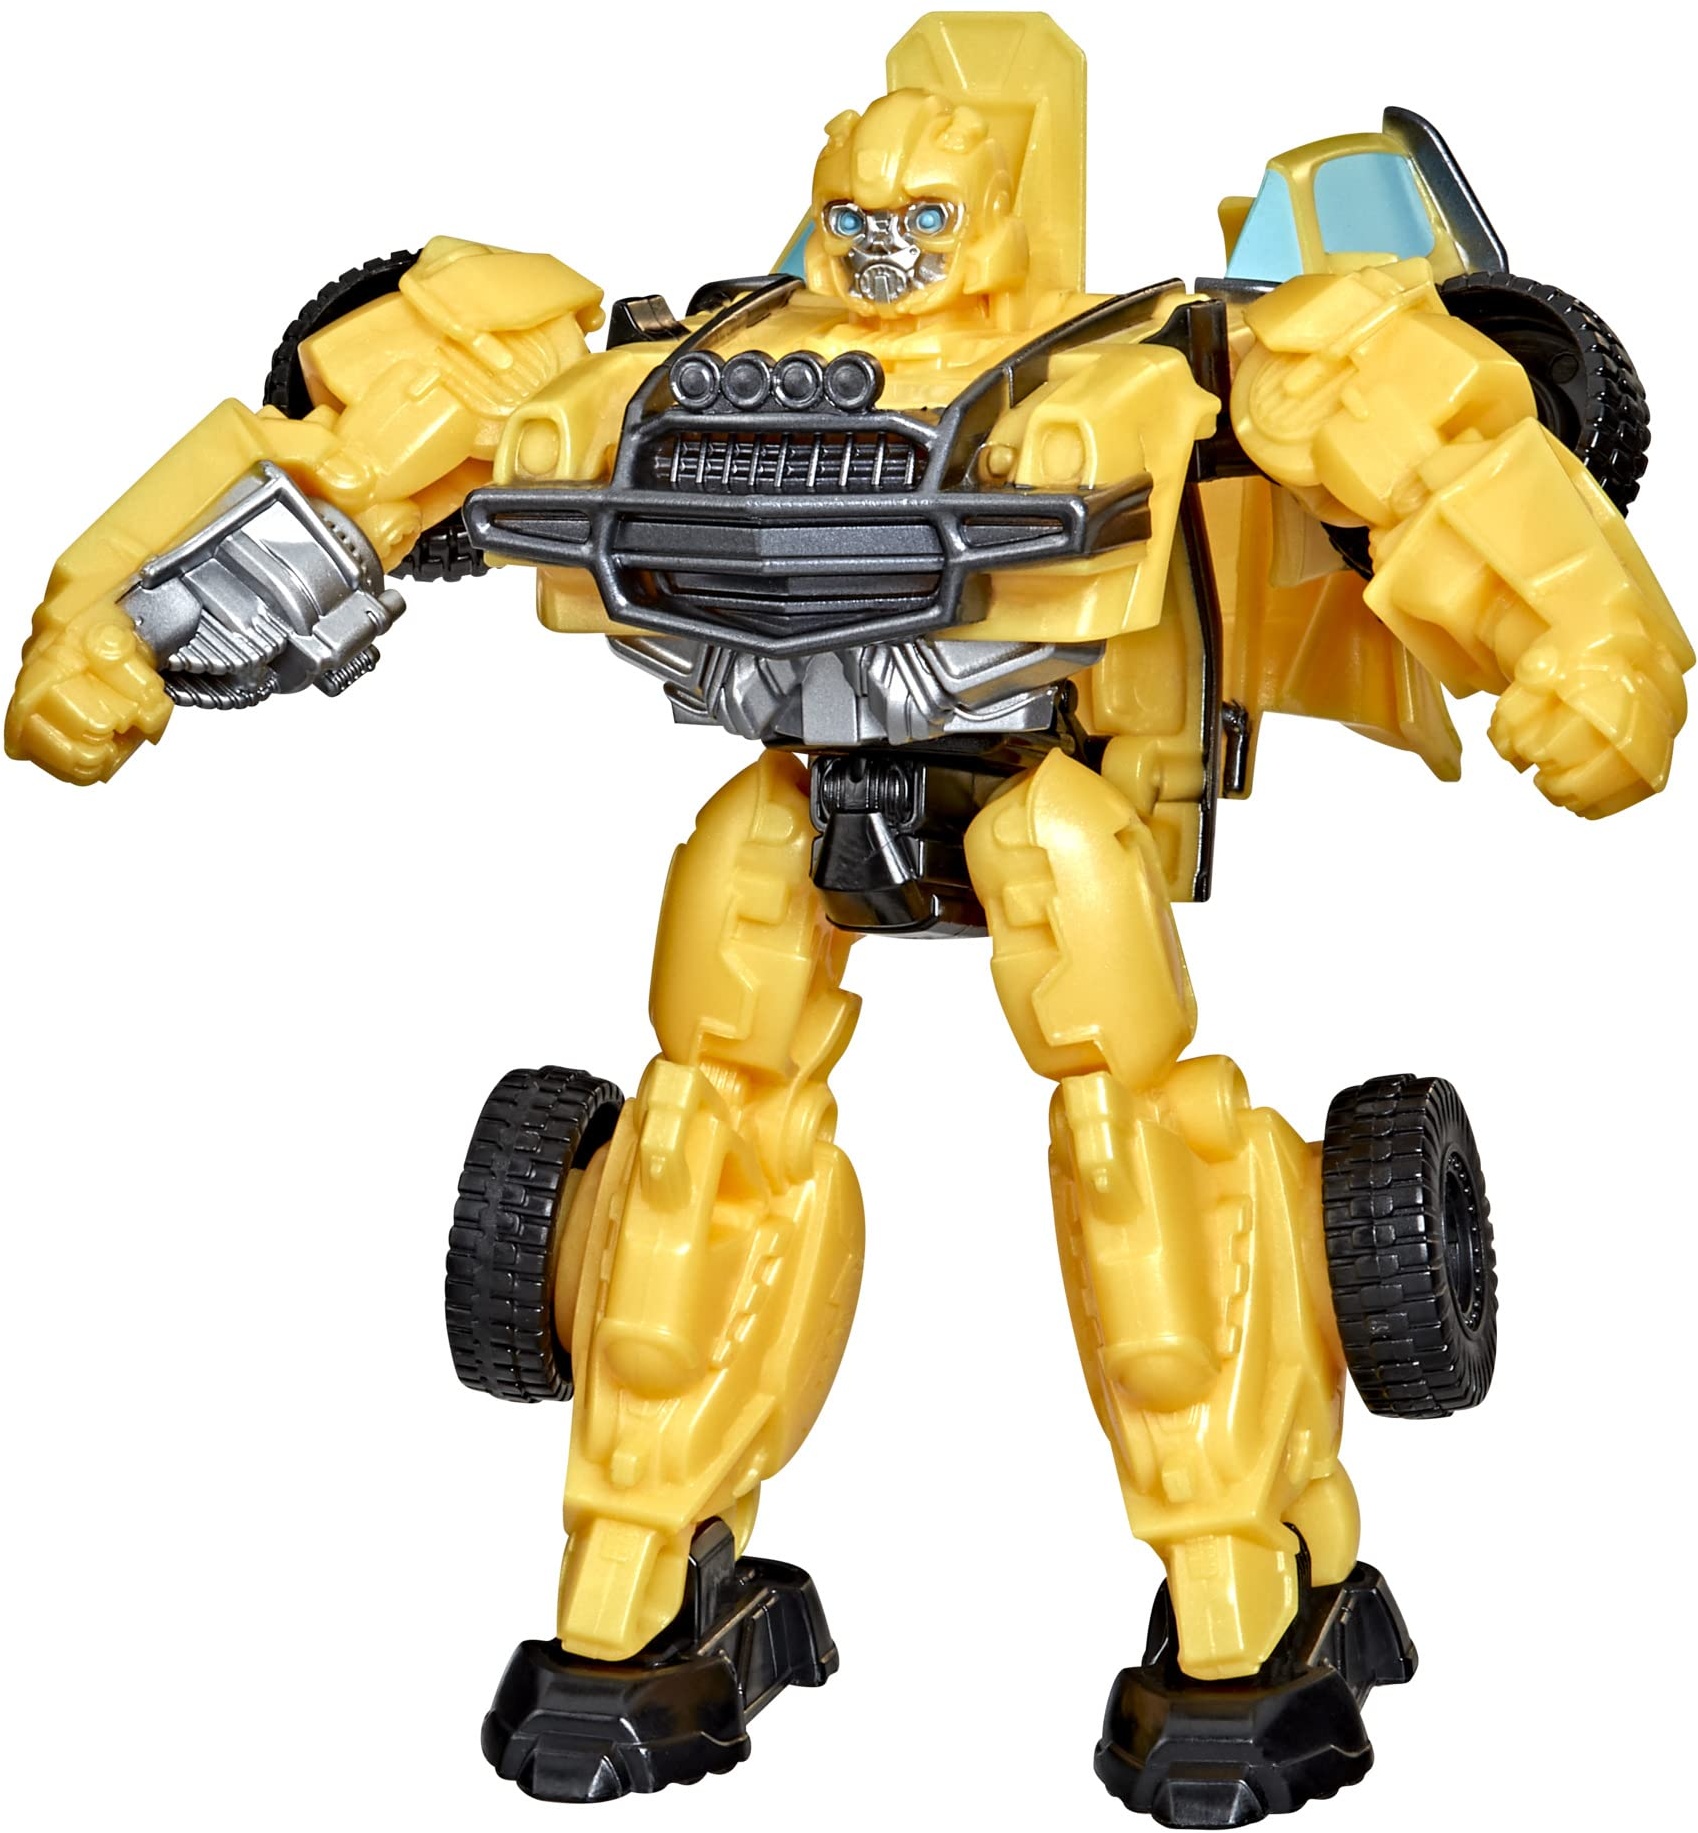 Transformers: Aufstieg der Bestien, Beast Alliance Battle Changers Bumblebee Action-Figur zum Film, ab 6 Jahren, 11 cm